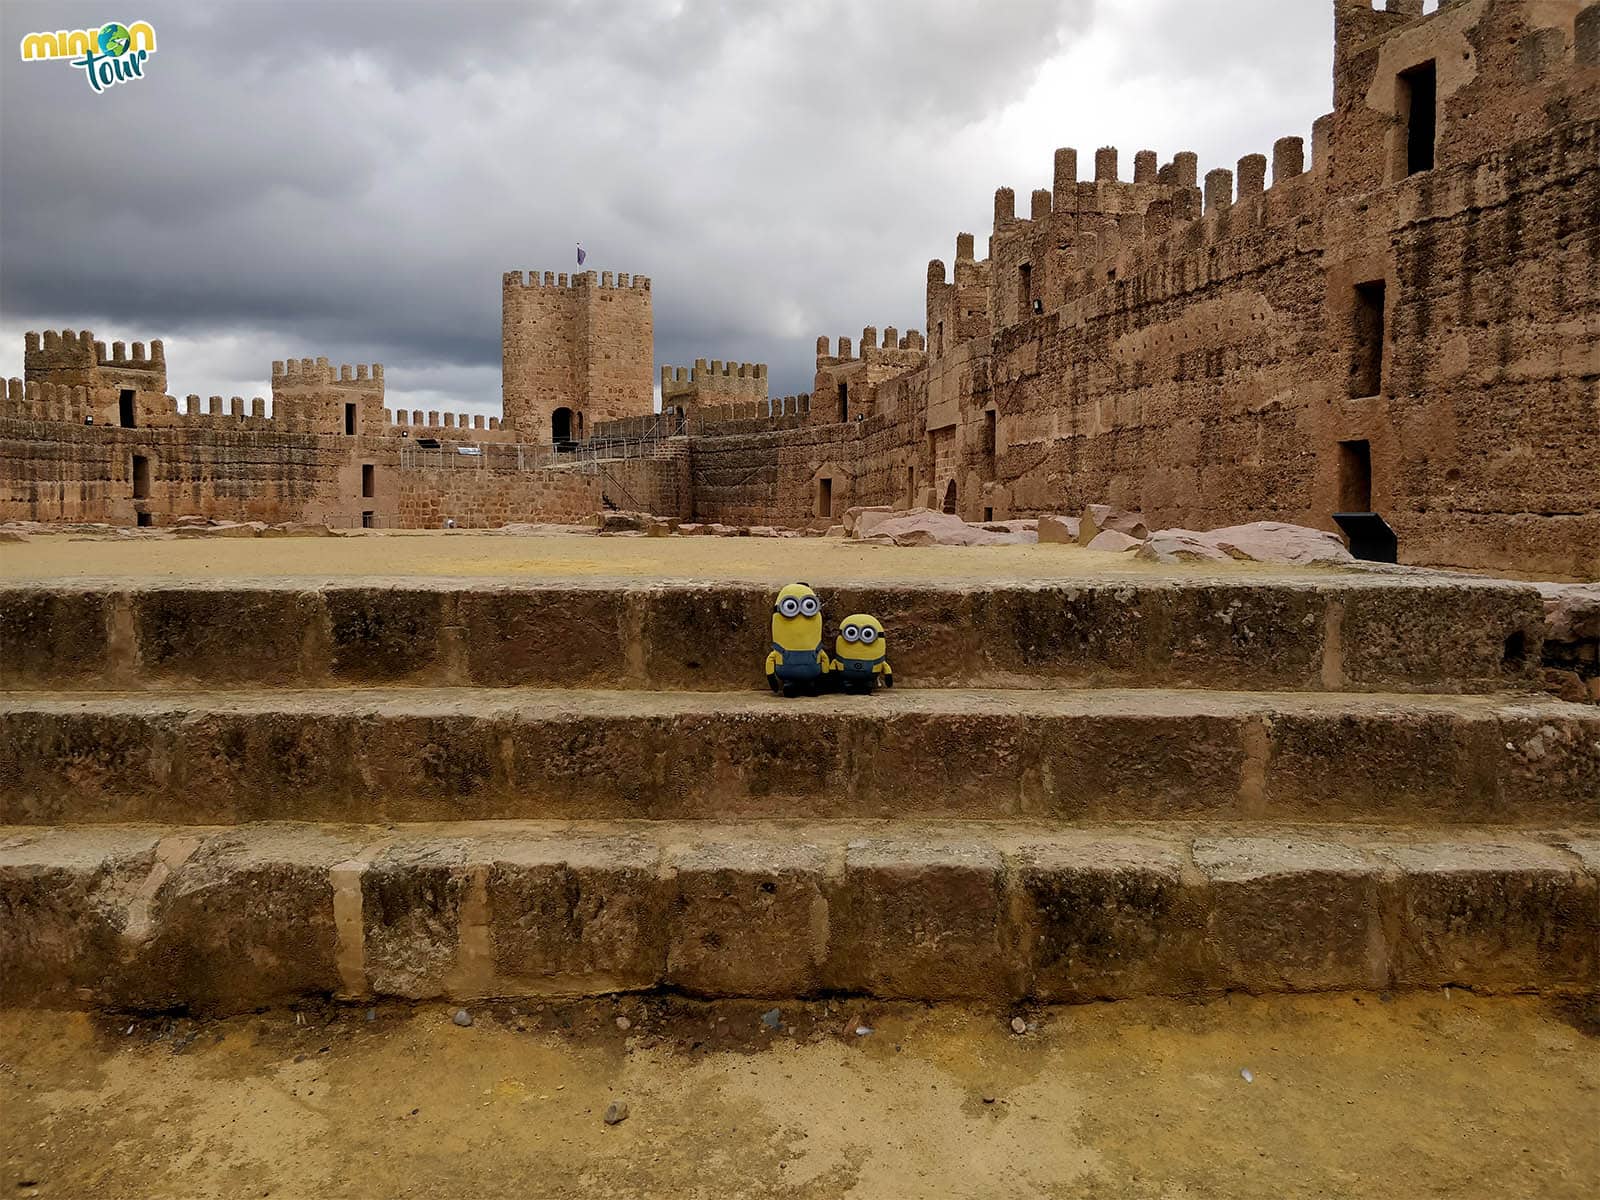 Descubrimos uno de los castillos más antiguos de España, el Castillo de Baños de la Encina